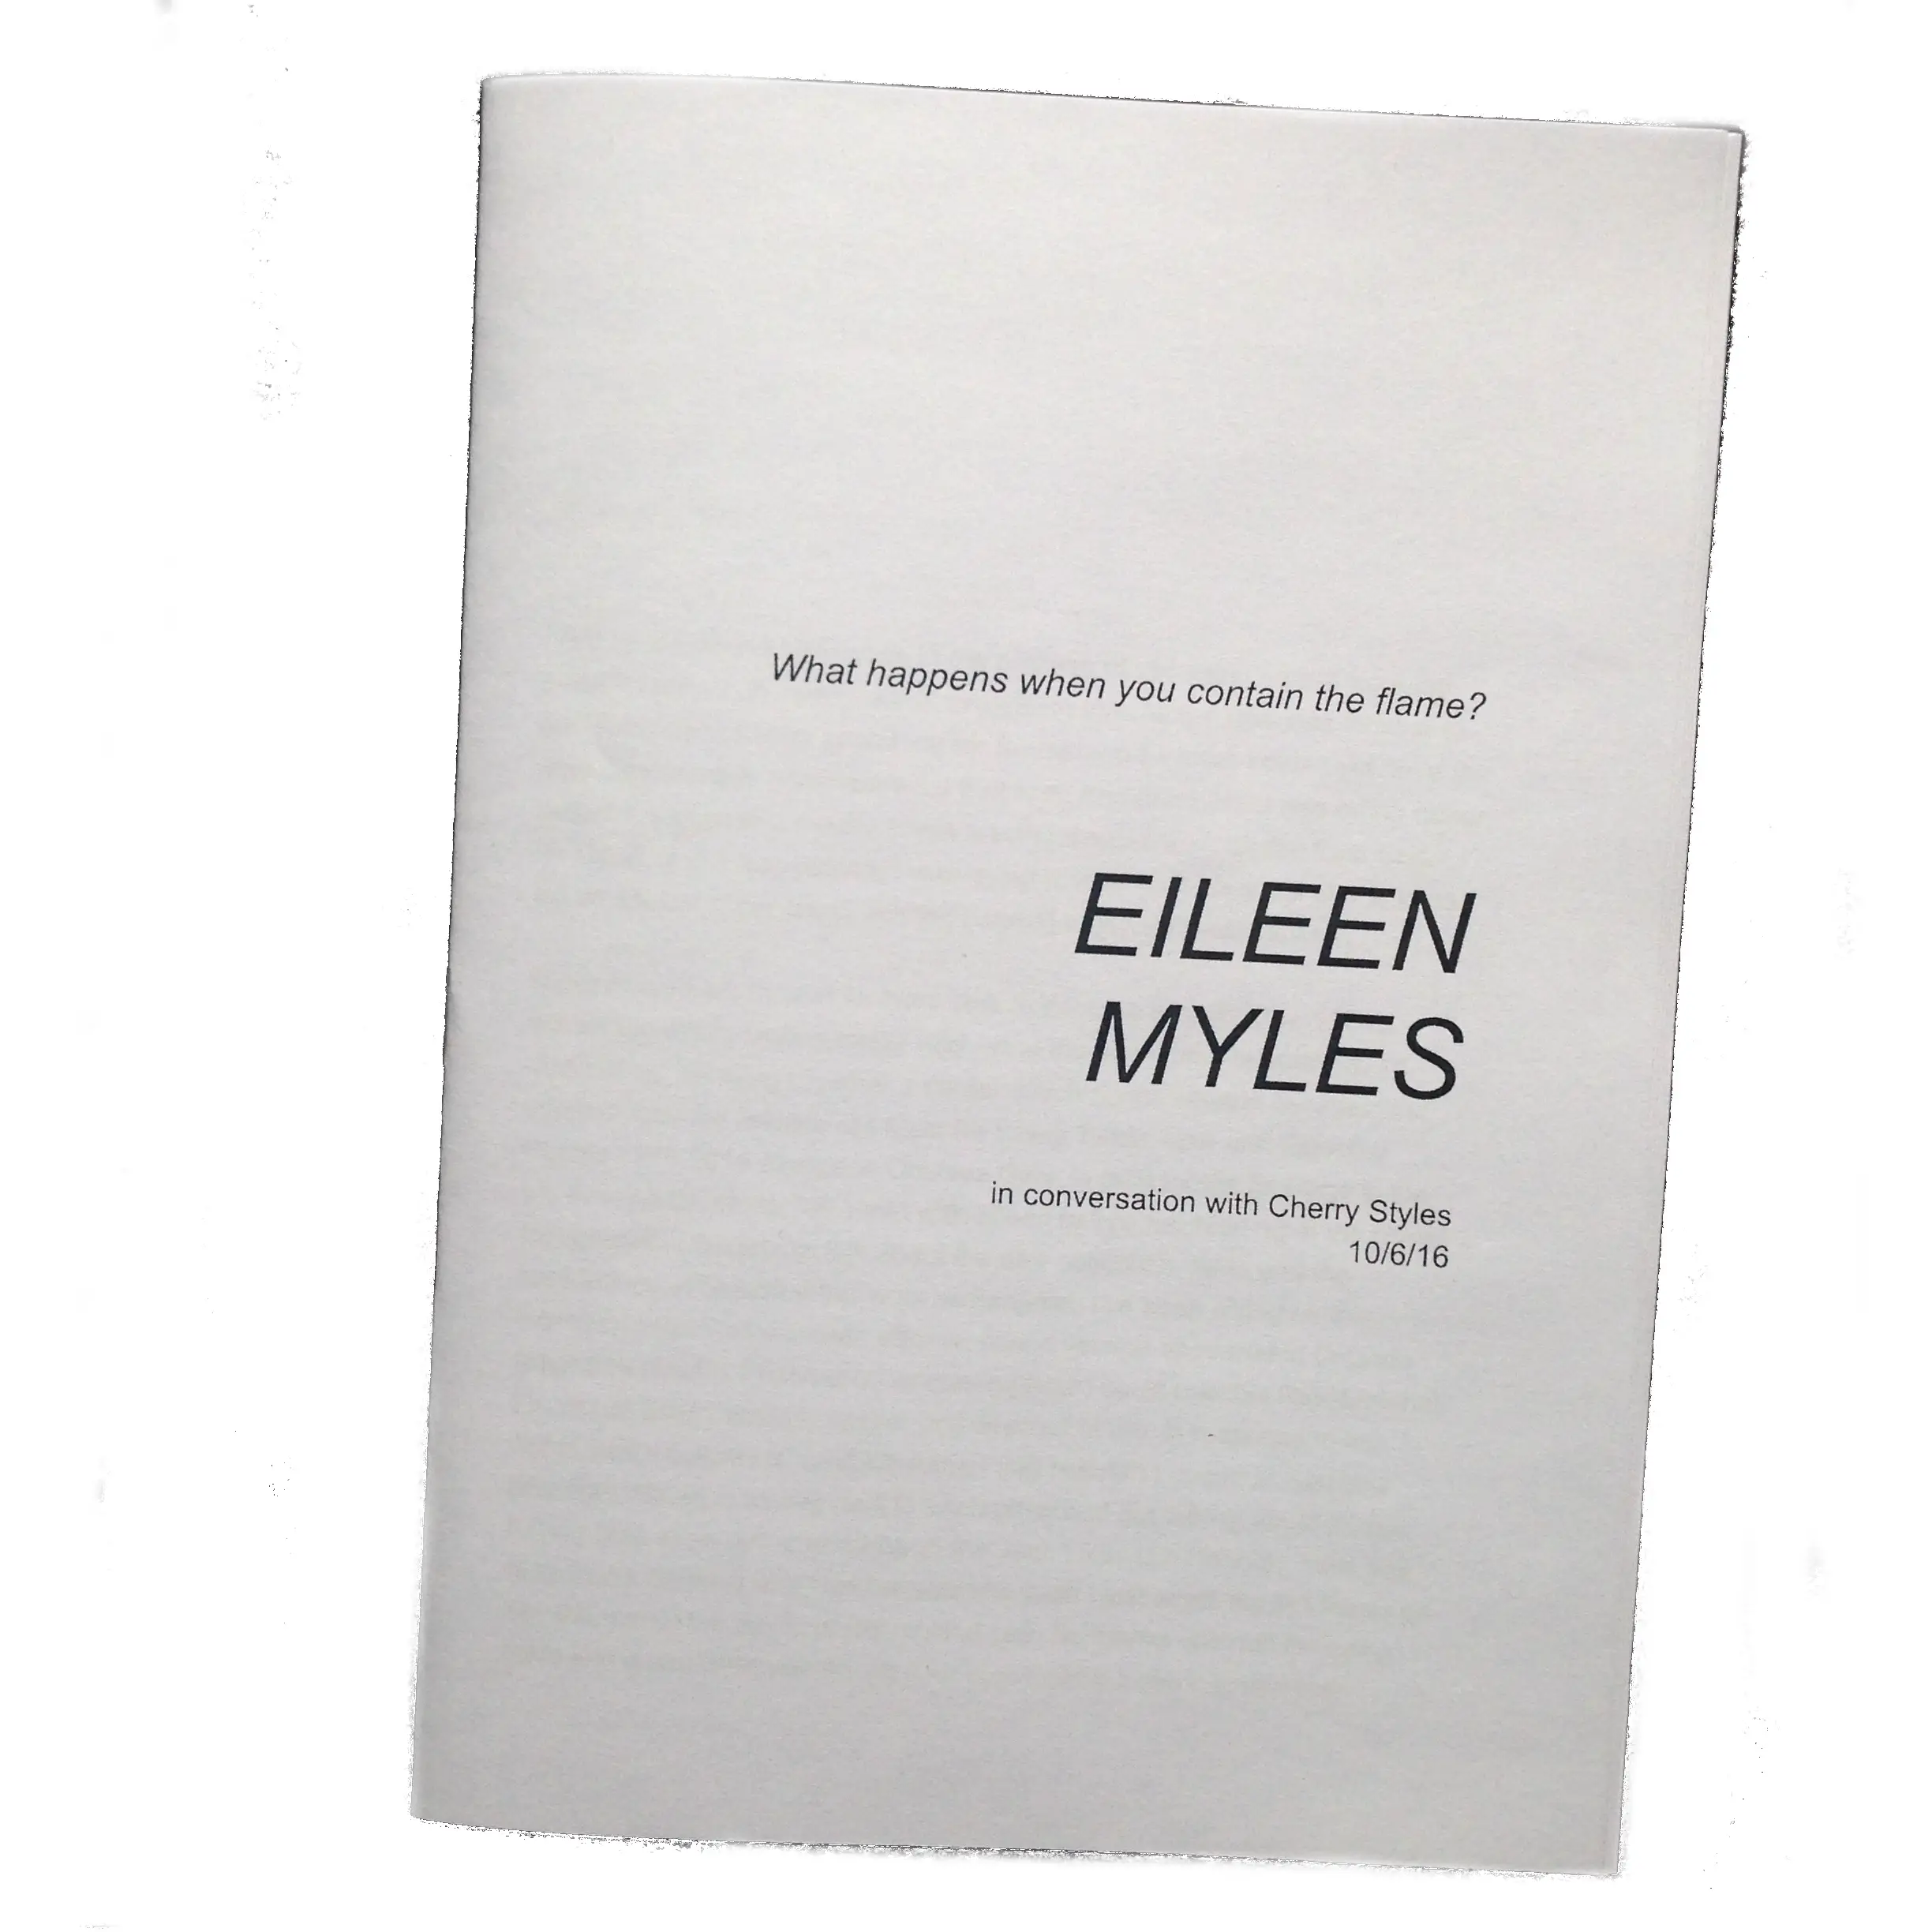 Eileen myles Poems